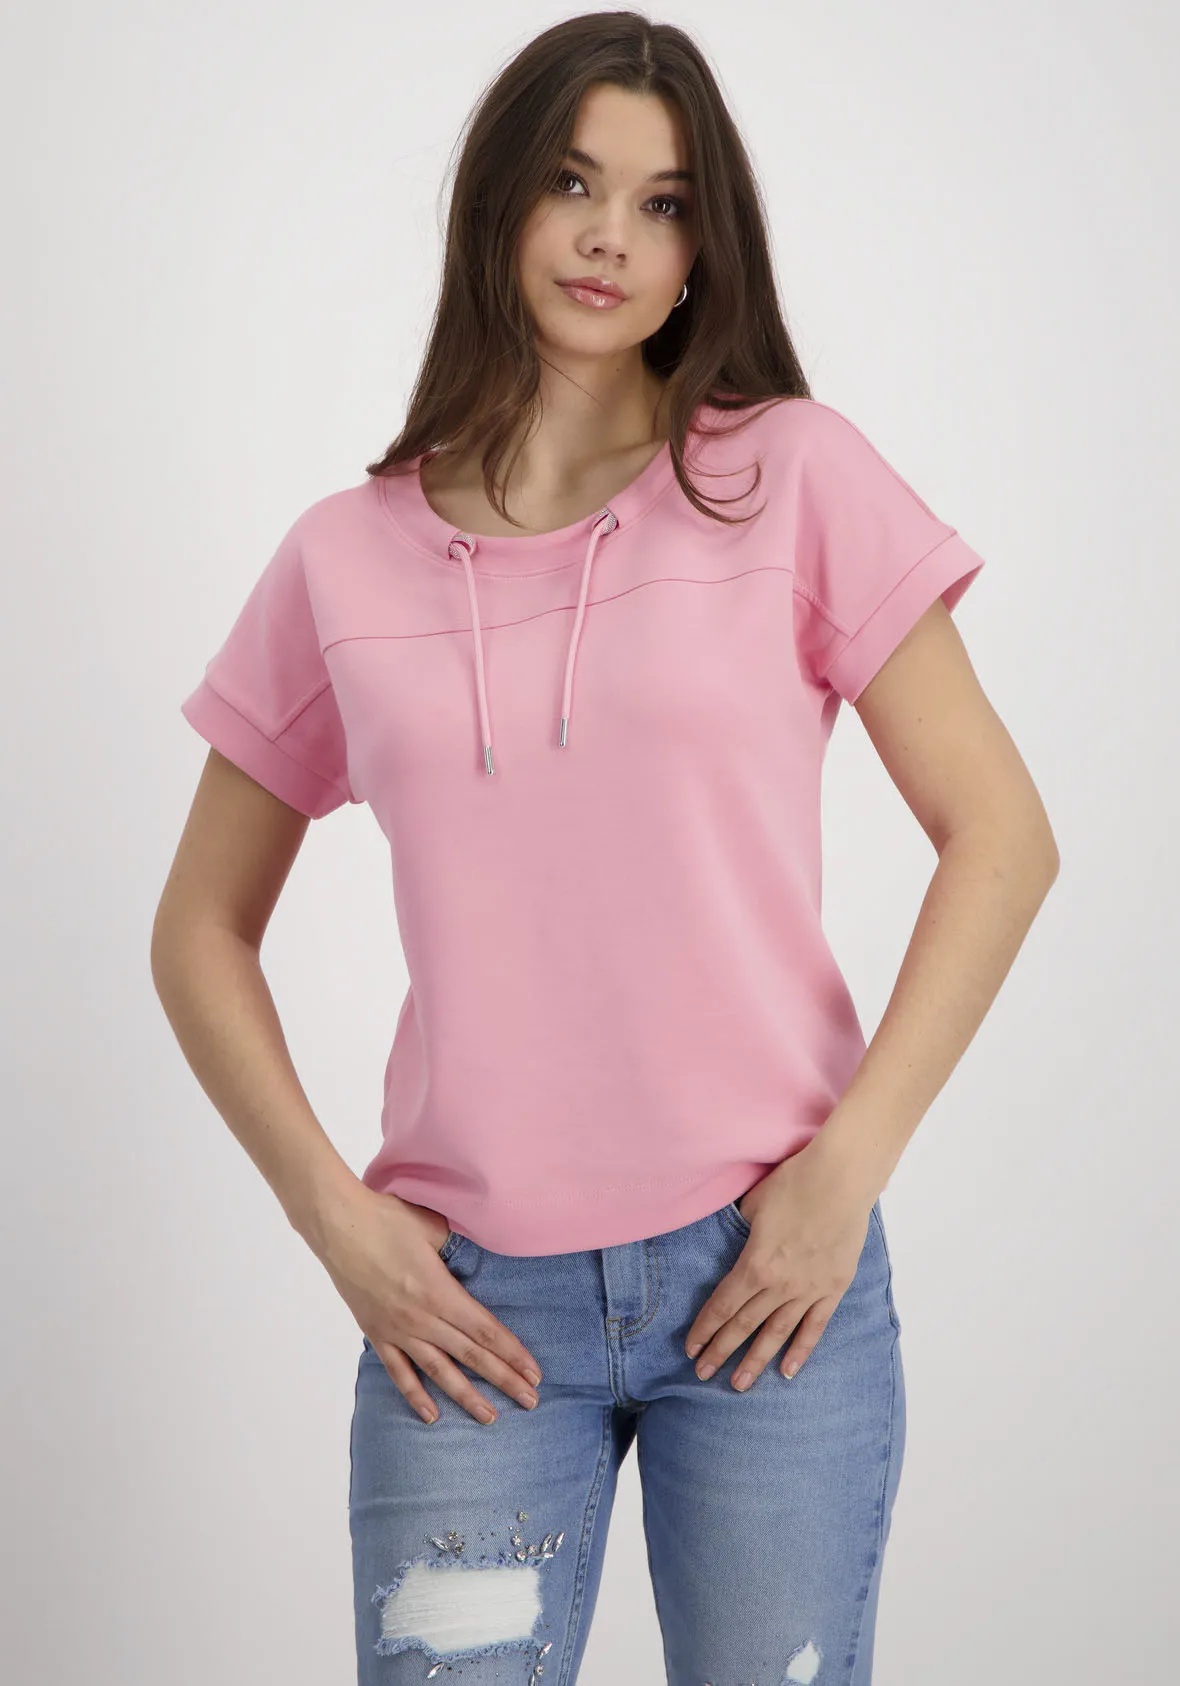 Sweatshirt MONARI Gr. 38, pink smoothie Damen Sweatshirts mit Schmucköse